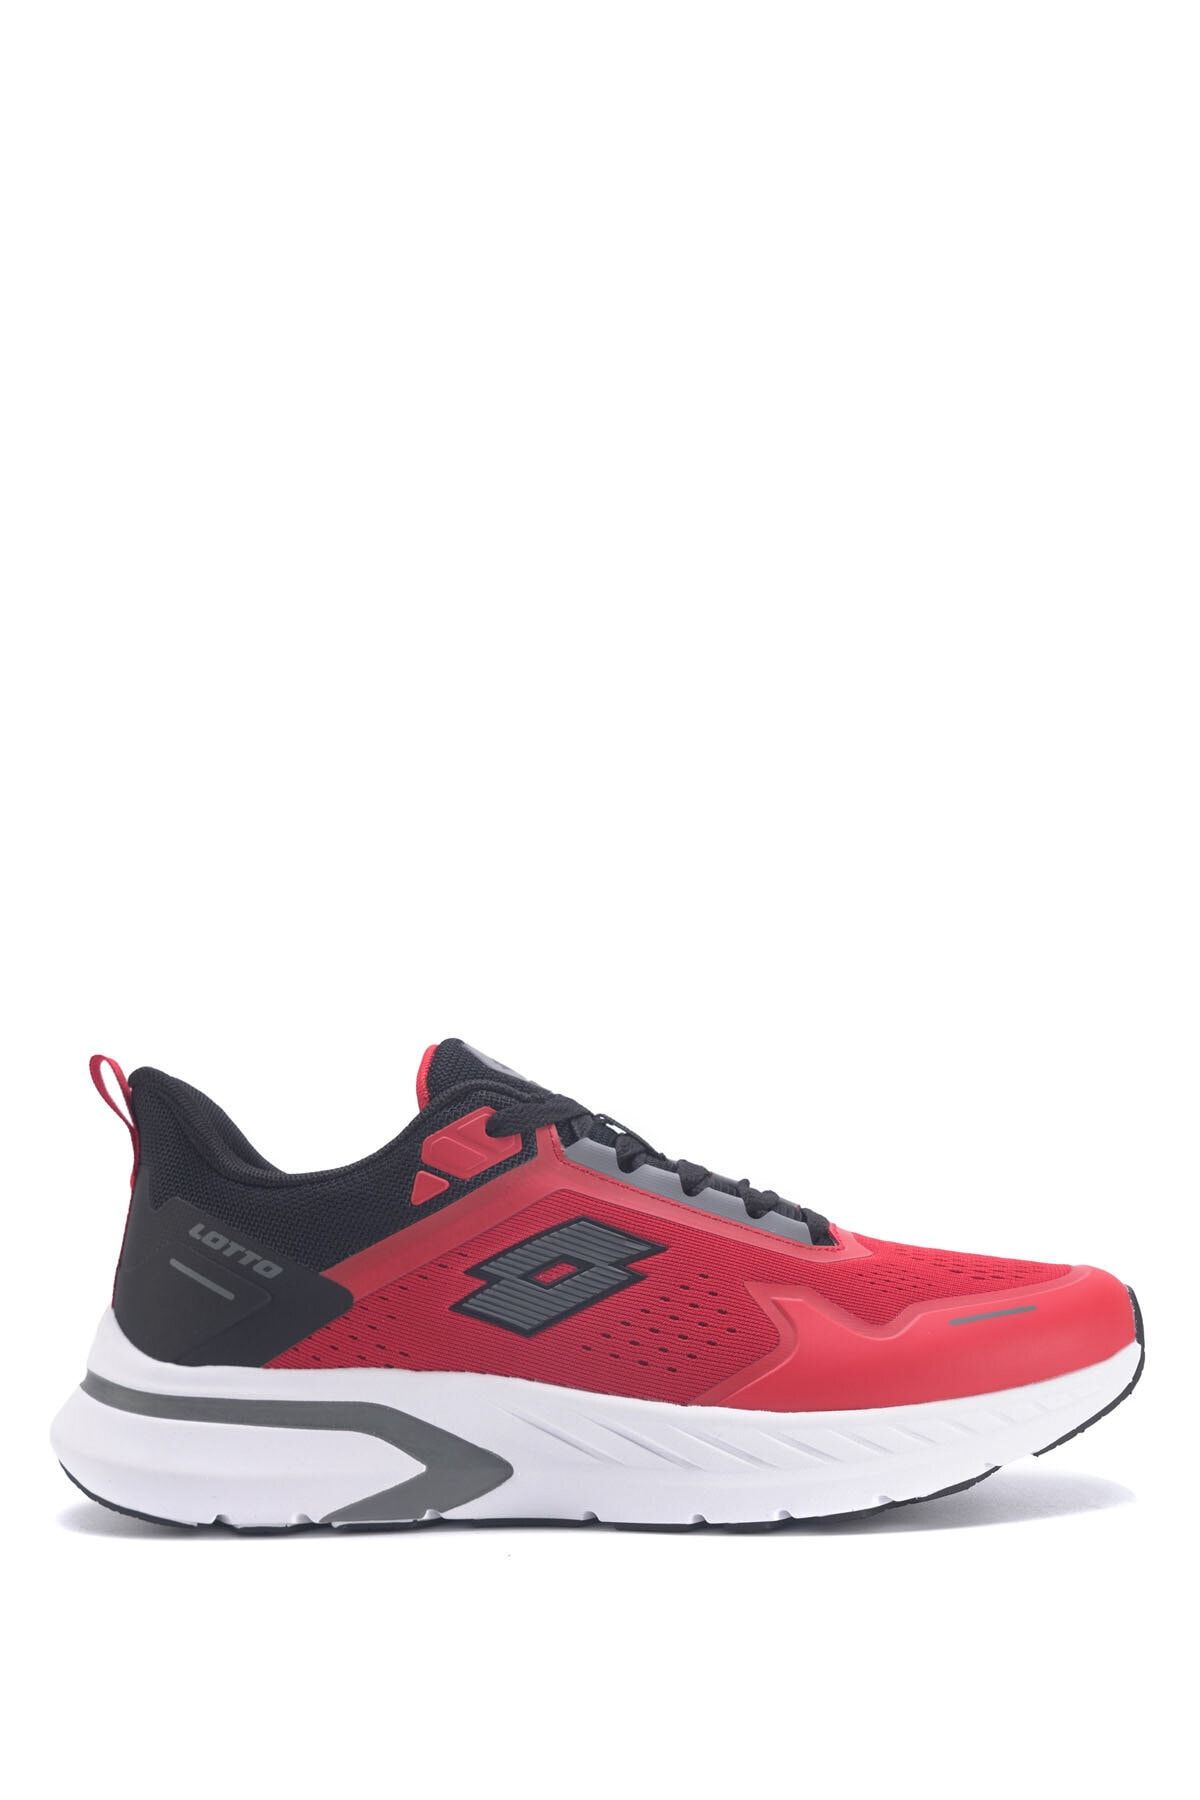 Lotto Lovelo 3fx Kırmızı Erkek Koşu Ayakkabısı